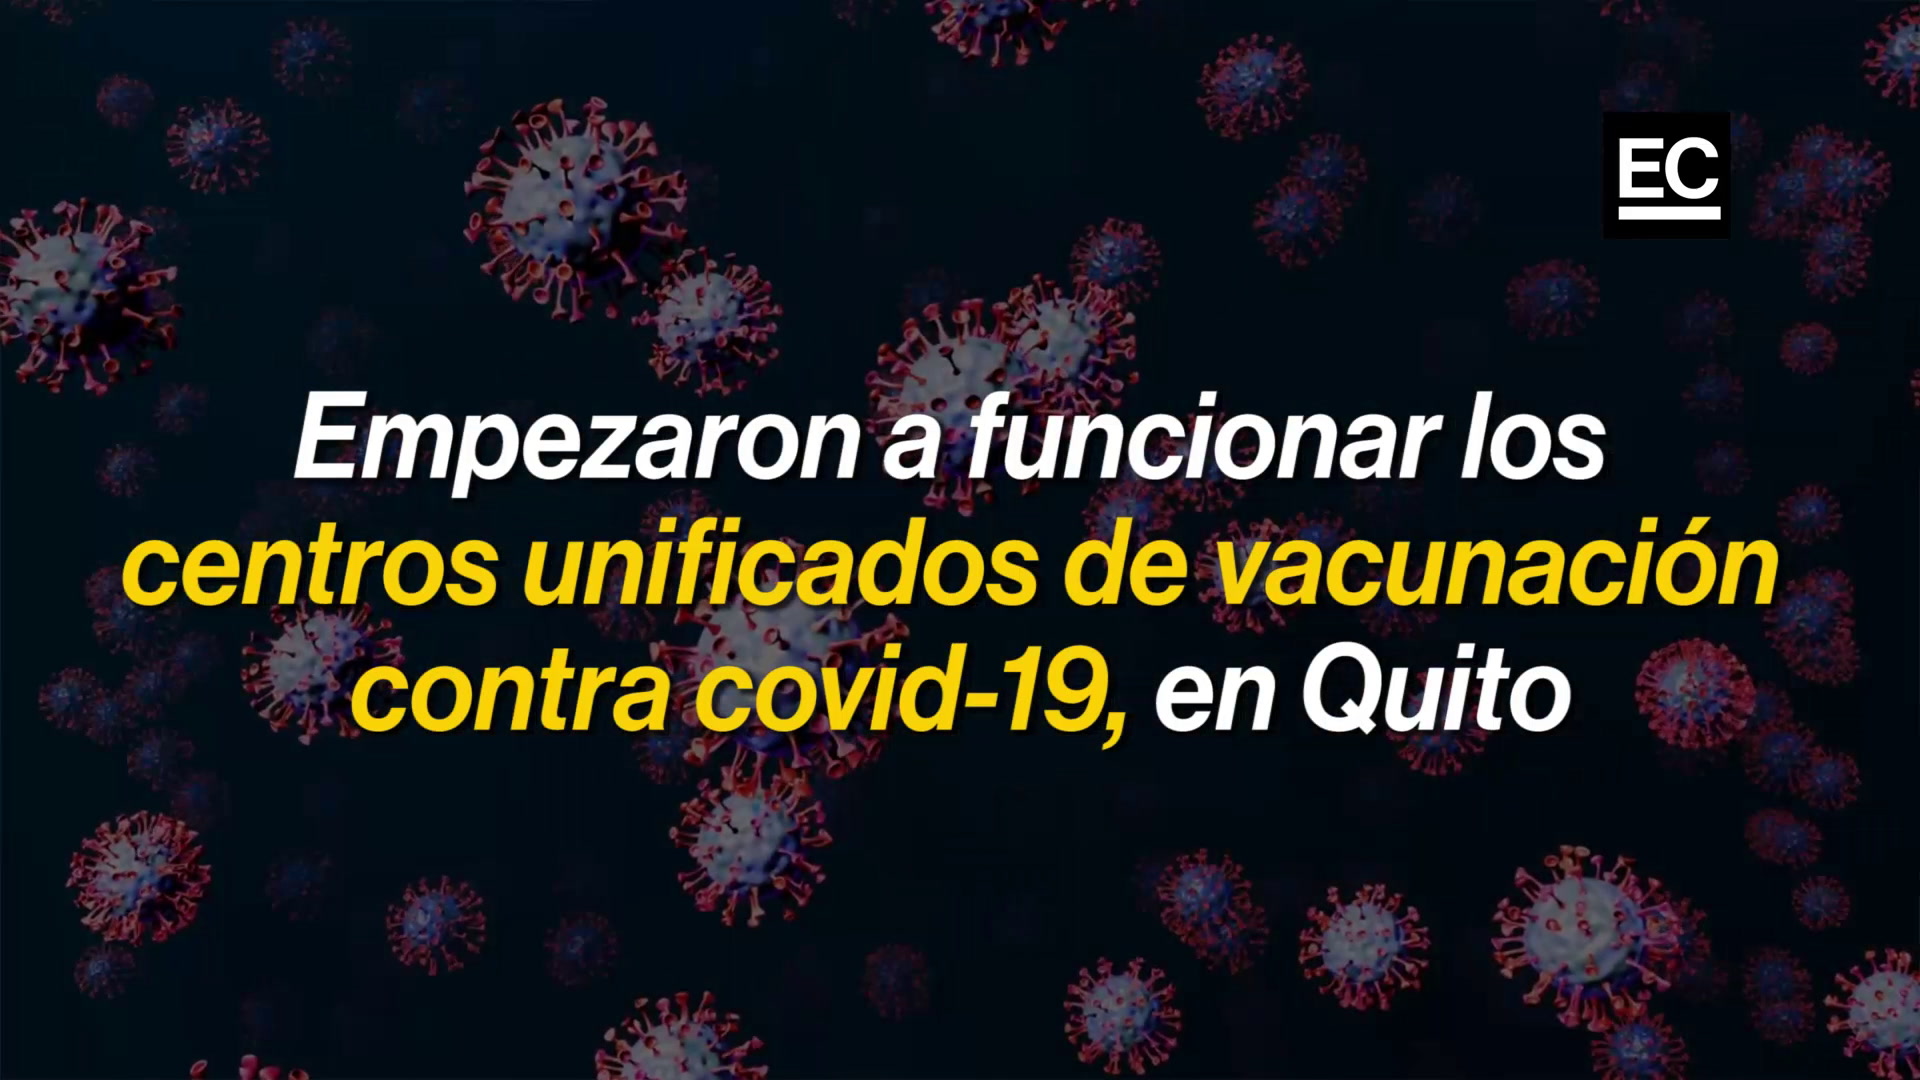 Desde este lunes 21 de junio del 2021 se unificaron varios centros de vacunación en Quito. Aquí le explicamos por qué se unificaron y qué centros ya no funcionan para inocularse contra el covid-19. Foto captura